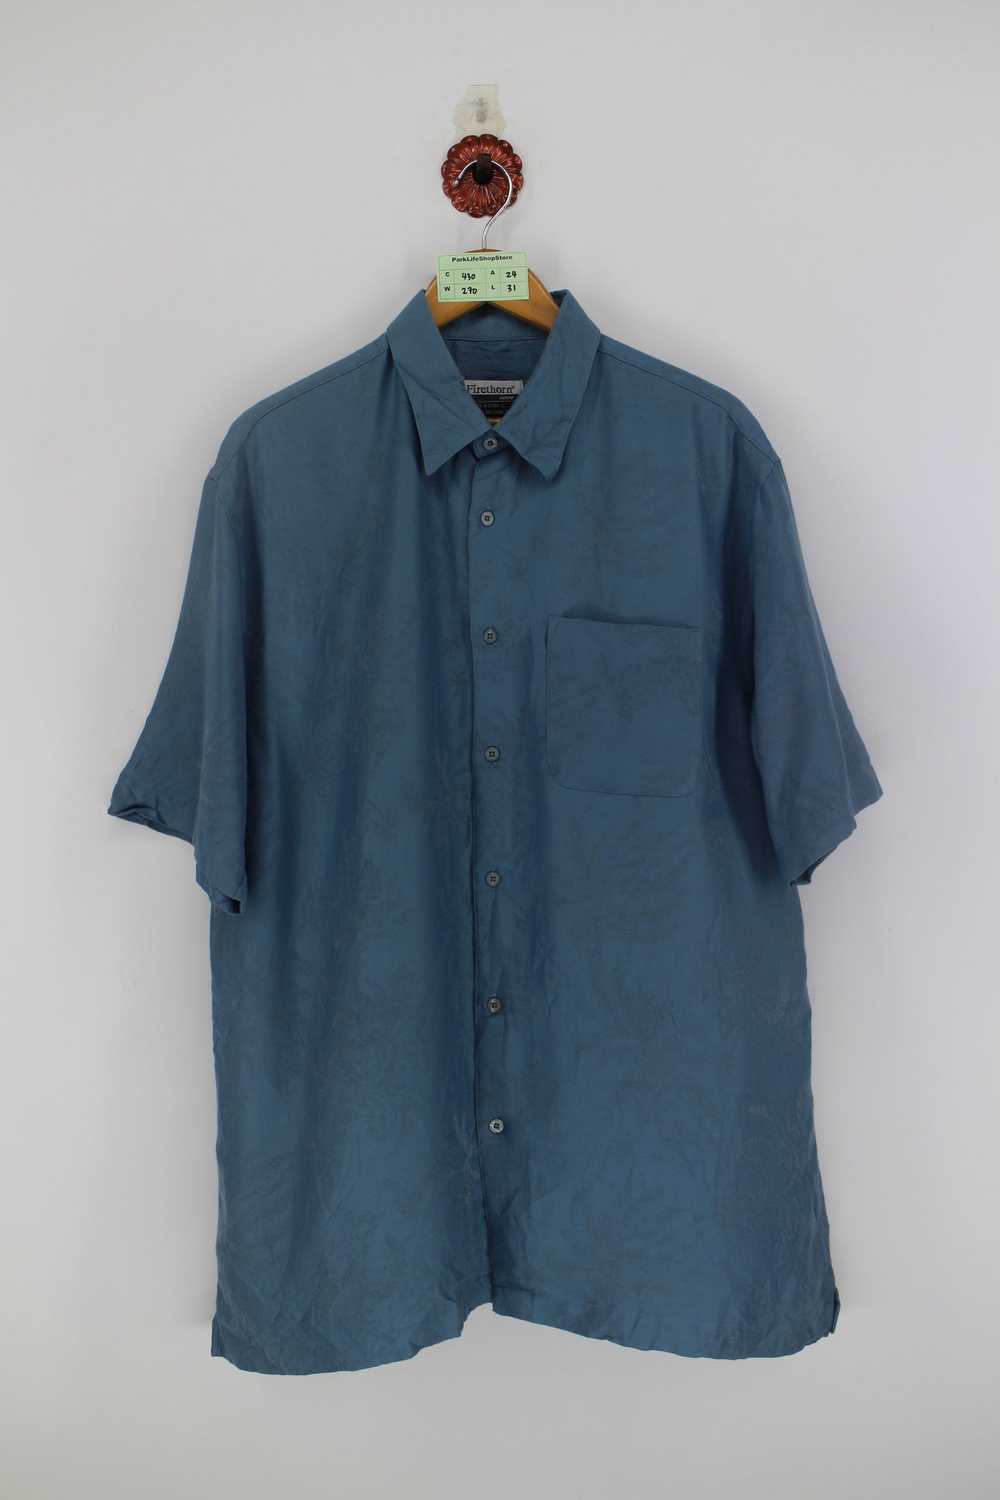 Hawaiian Shirt Vintage 90s HAWAIIAN Rayon Shirt C… - image 1